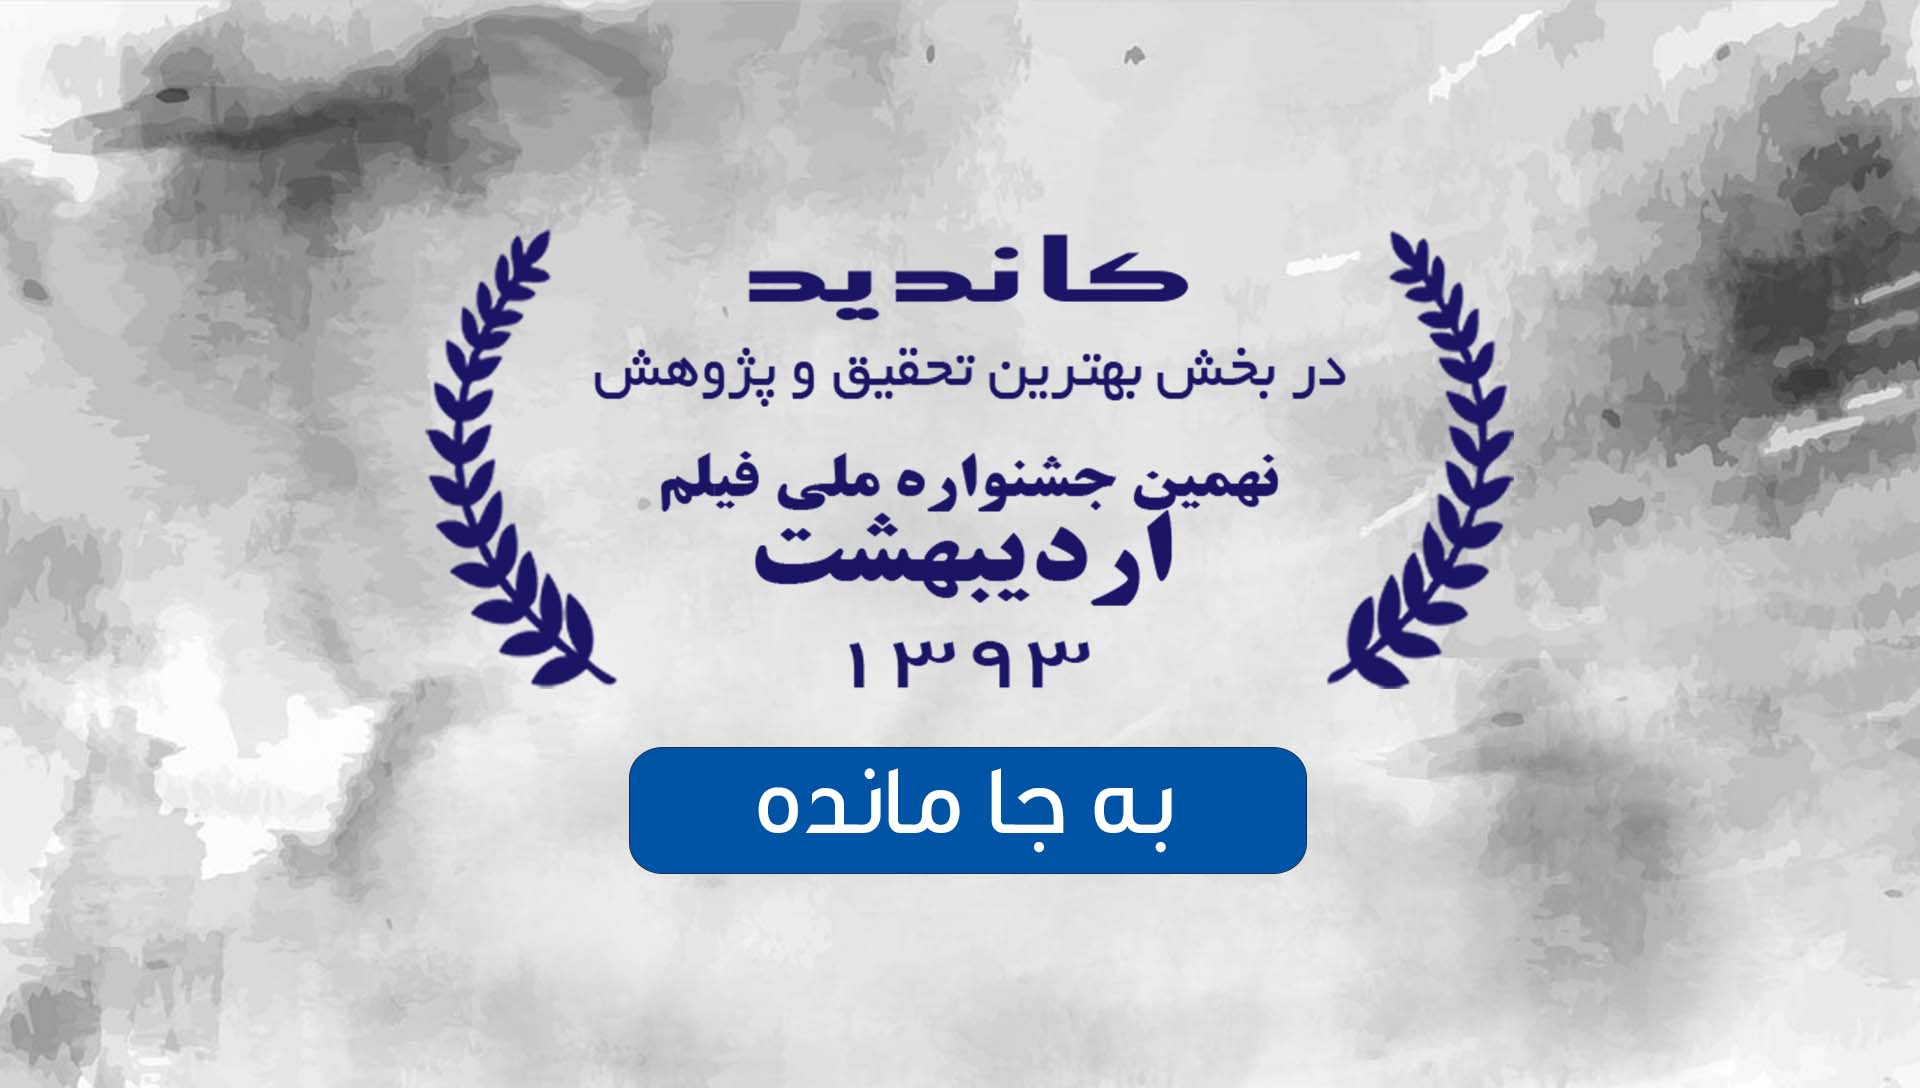 جشنواره اردیبهشت به جا مانده- گروه فیلم سازی زوم شیراز - برادران شریفی